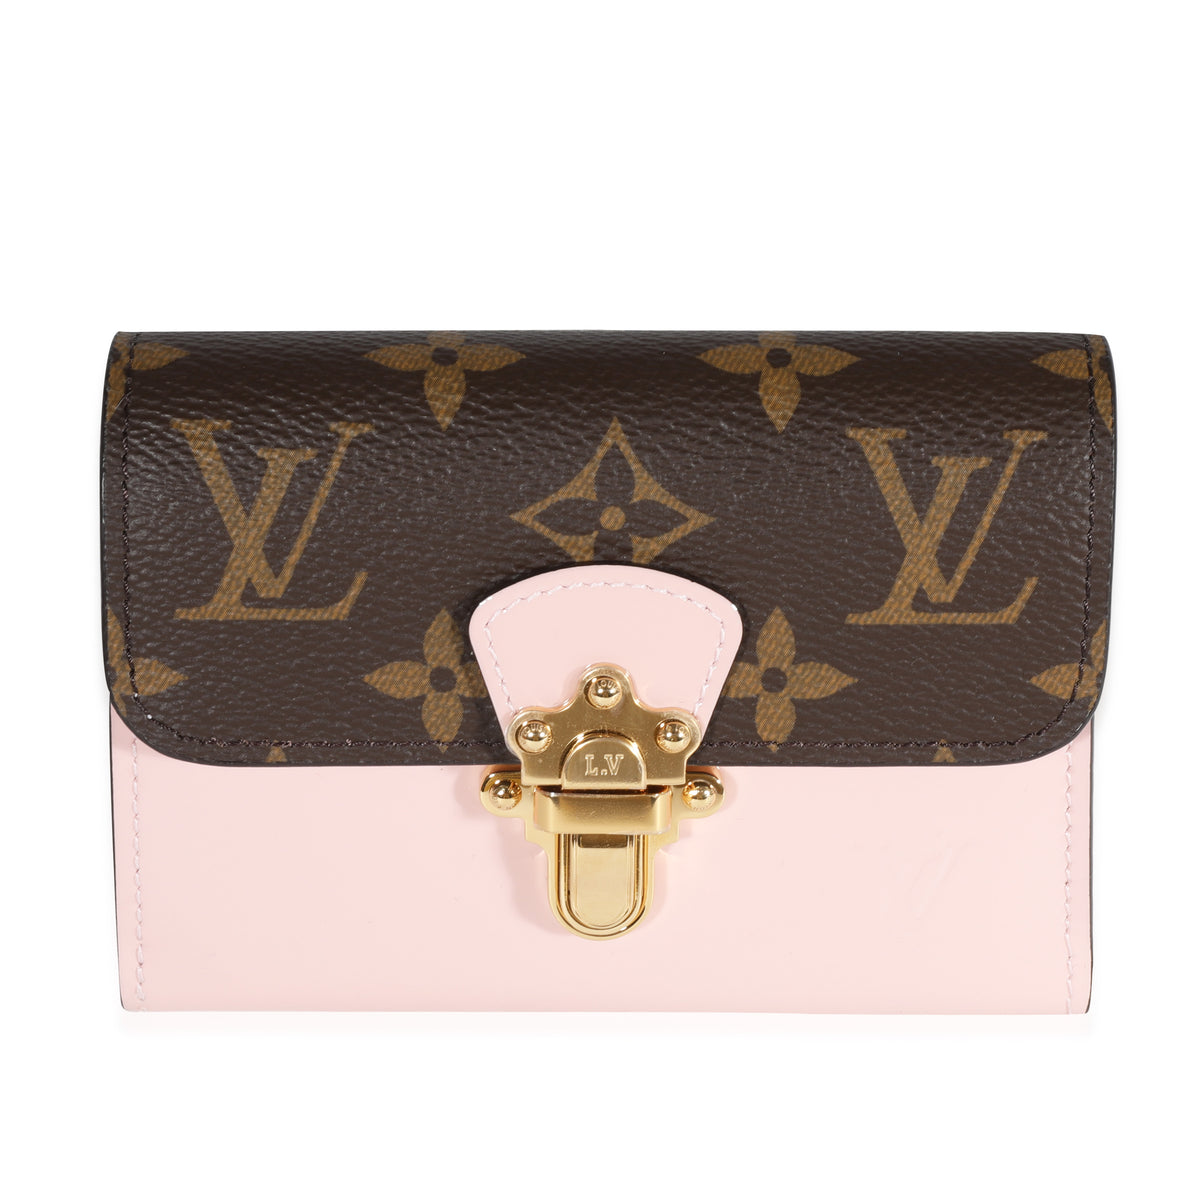 Louis Vuitton Vernis Monogram Cherrywood Chain Wallet